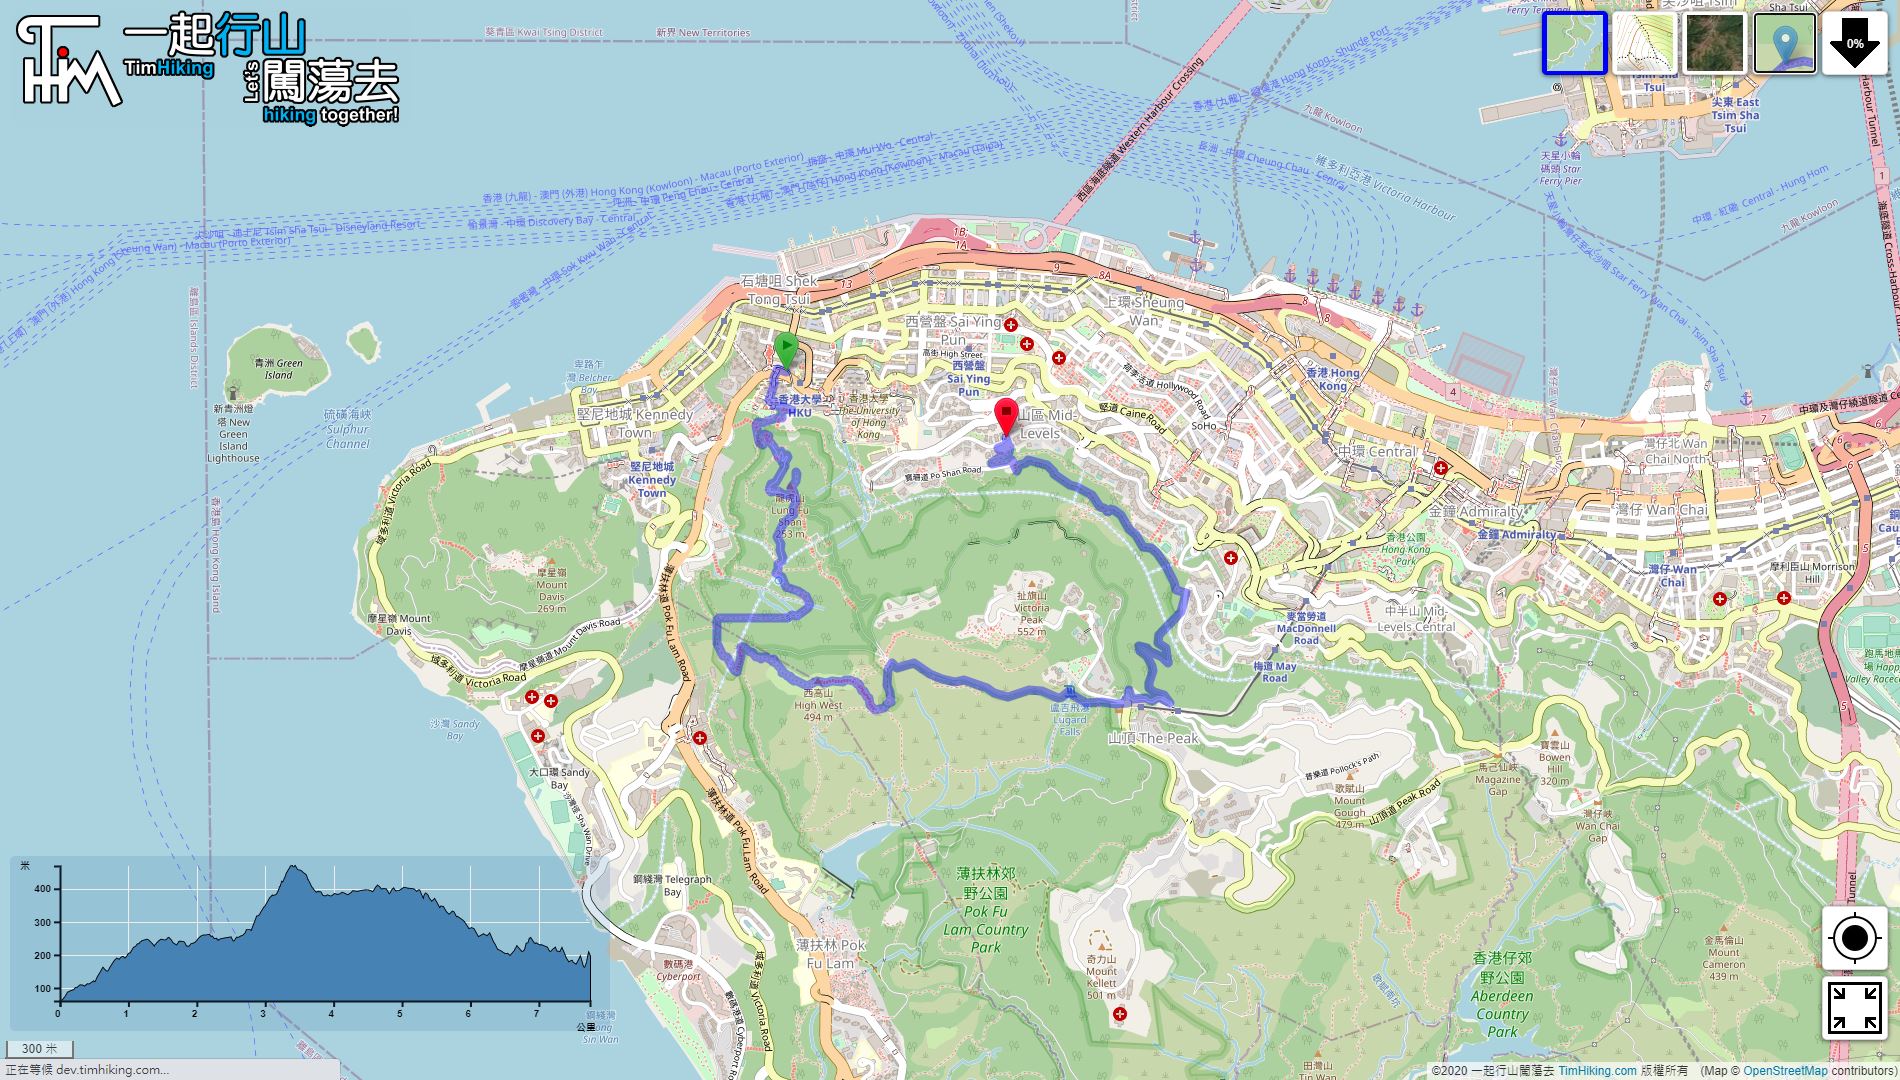 「High West Western Ridge Cheung Po Tsai Ancient Trail」路線Map